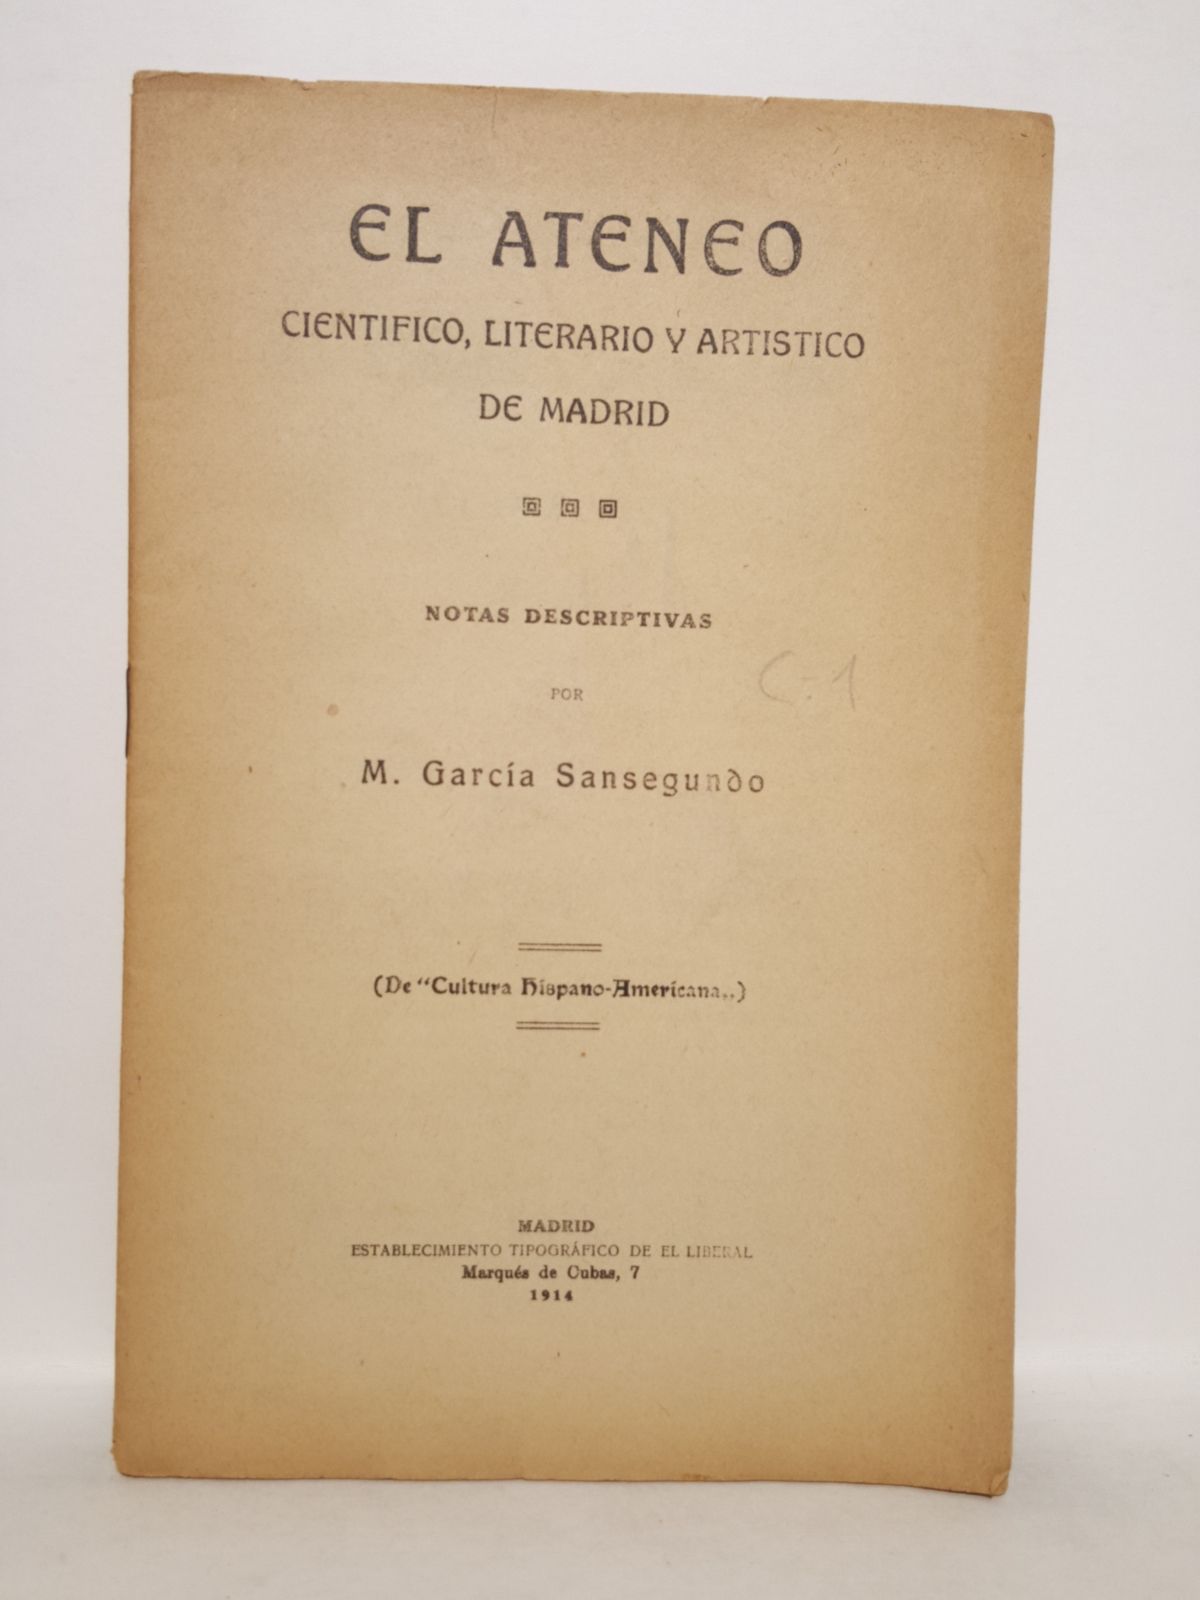 GARCIA SANSEGUNDO, M. - El Ateneo Cientfico, Literario y Artstico de Madrid. Notas descriptivas